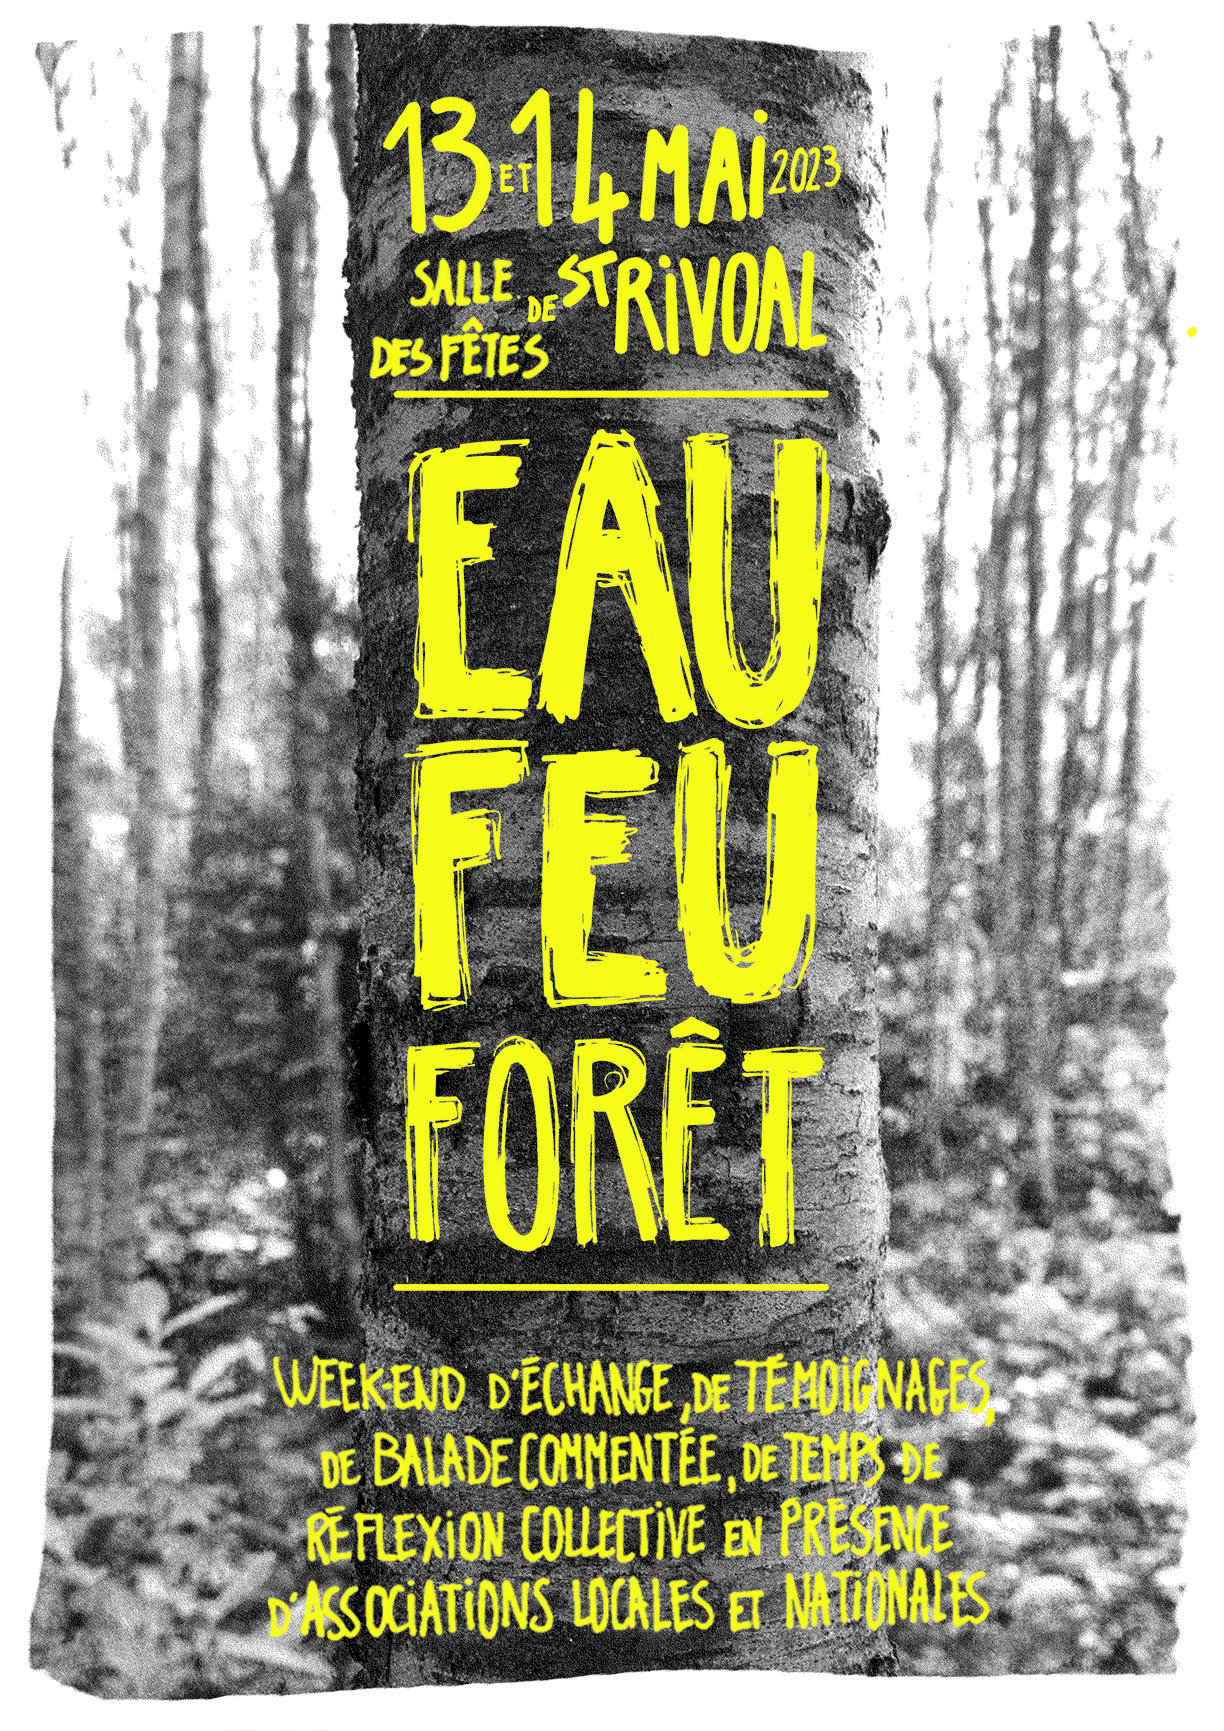 le 13 et 14 mai 2023 à la salle des fêtes de Saint-Rivoual : « Eau - Feu Forêt », week-end d'échange, de témoignage, de balade commentée, de temps de réflexion collective en présence d'association locales et nationales.